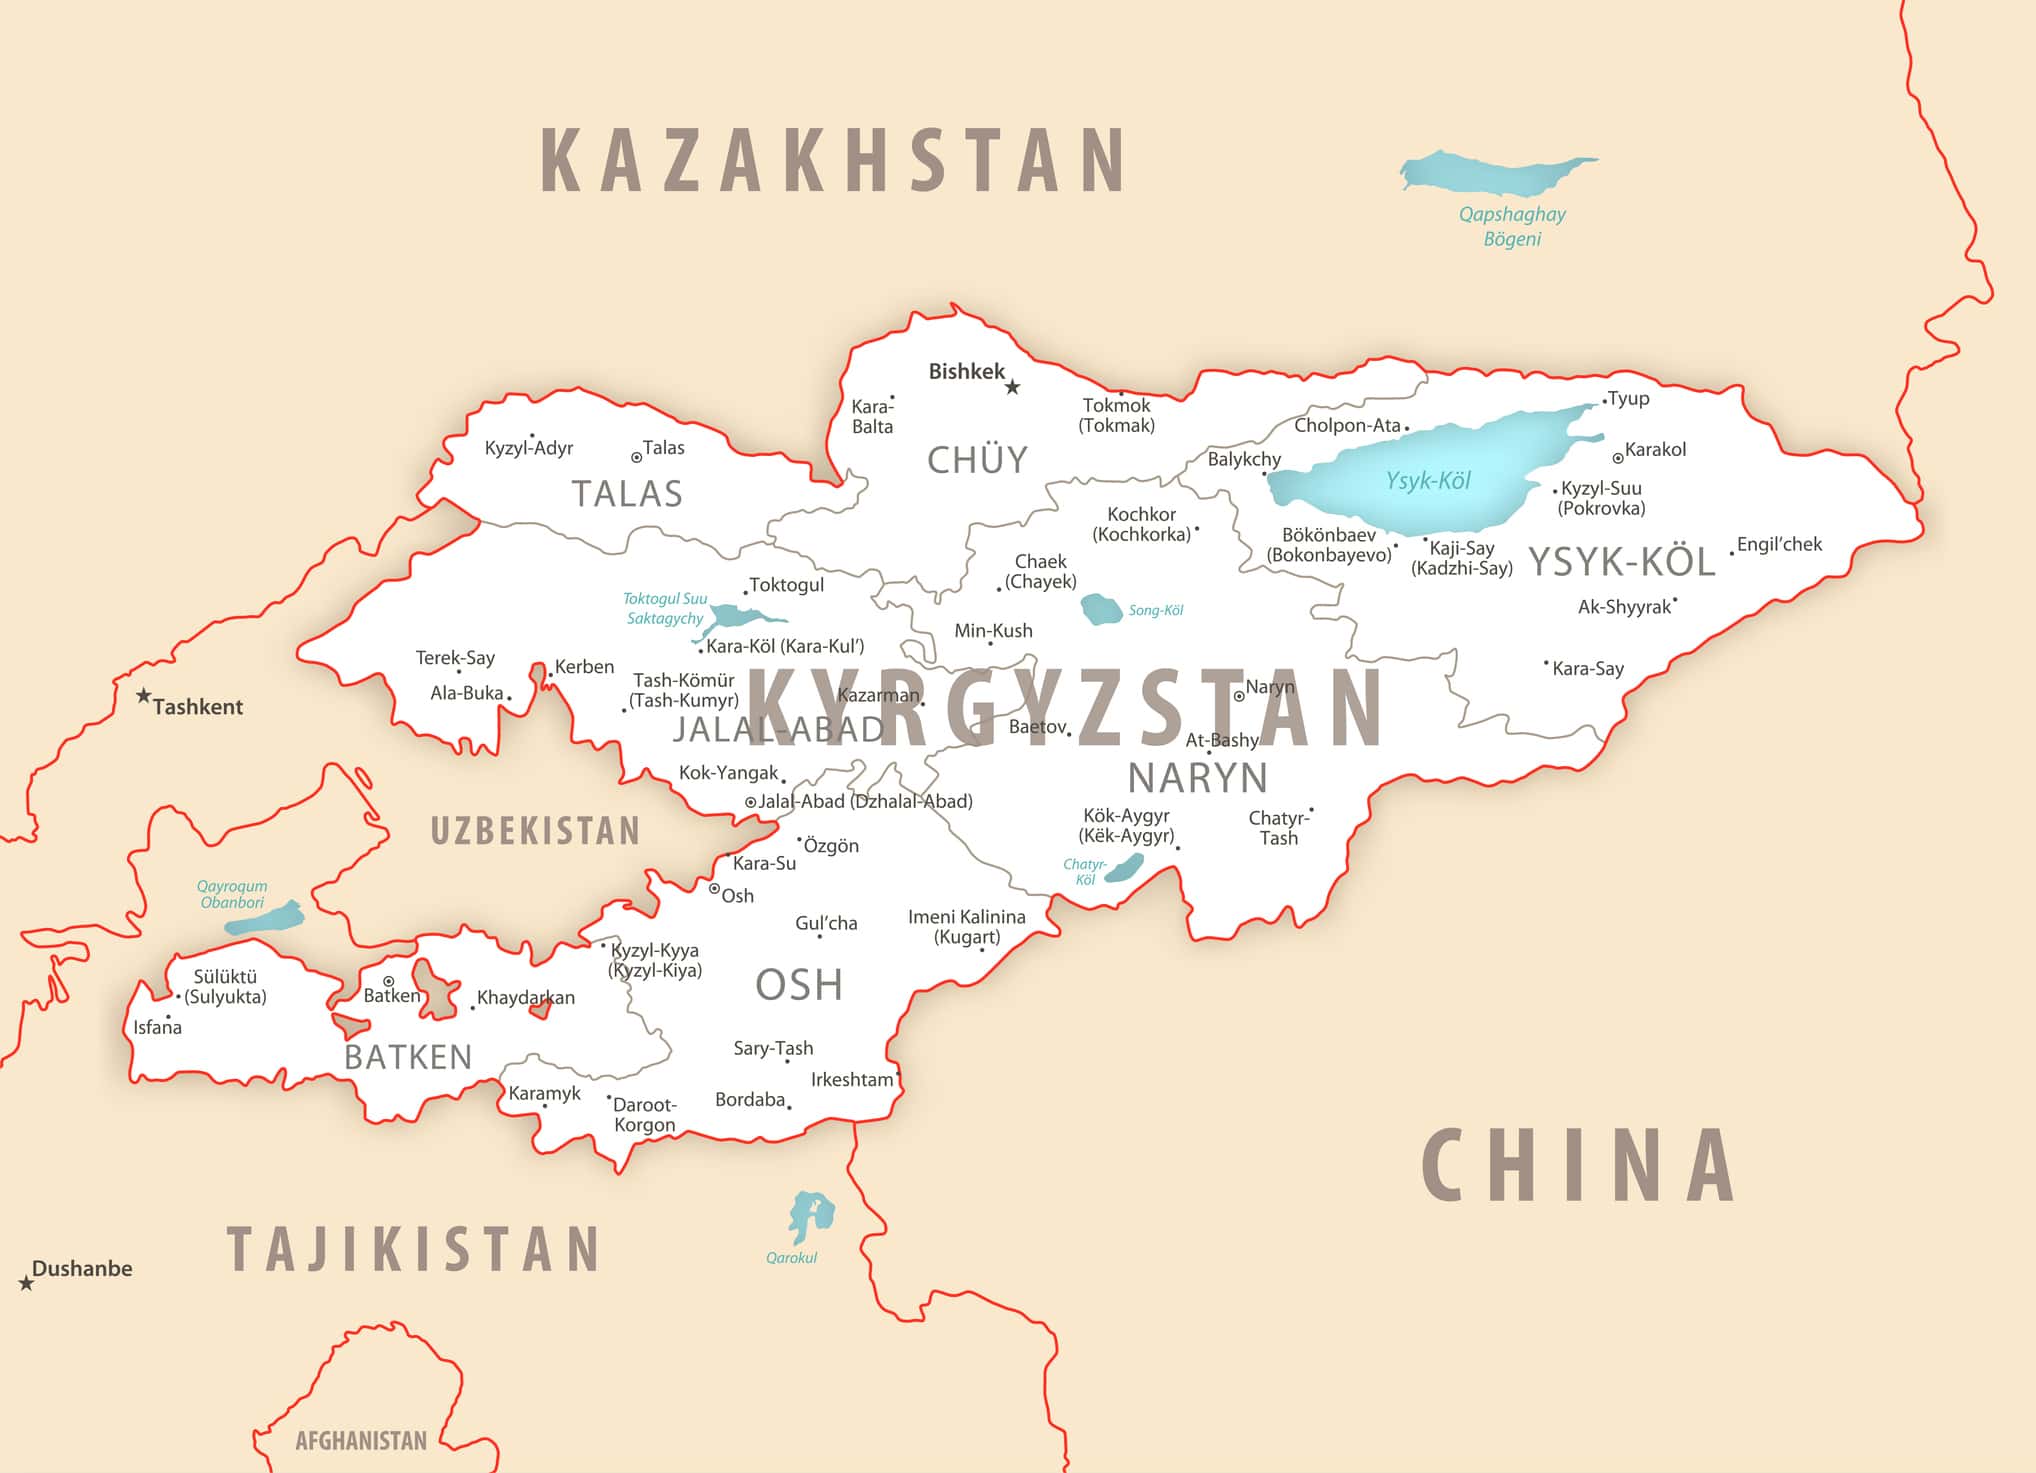 Mappa dettagliata del Kirghizistan con le regioni e le città del paese.